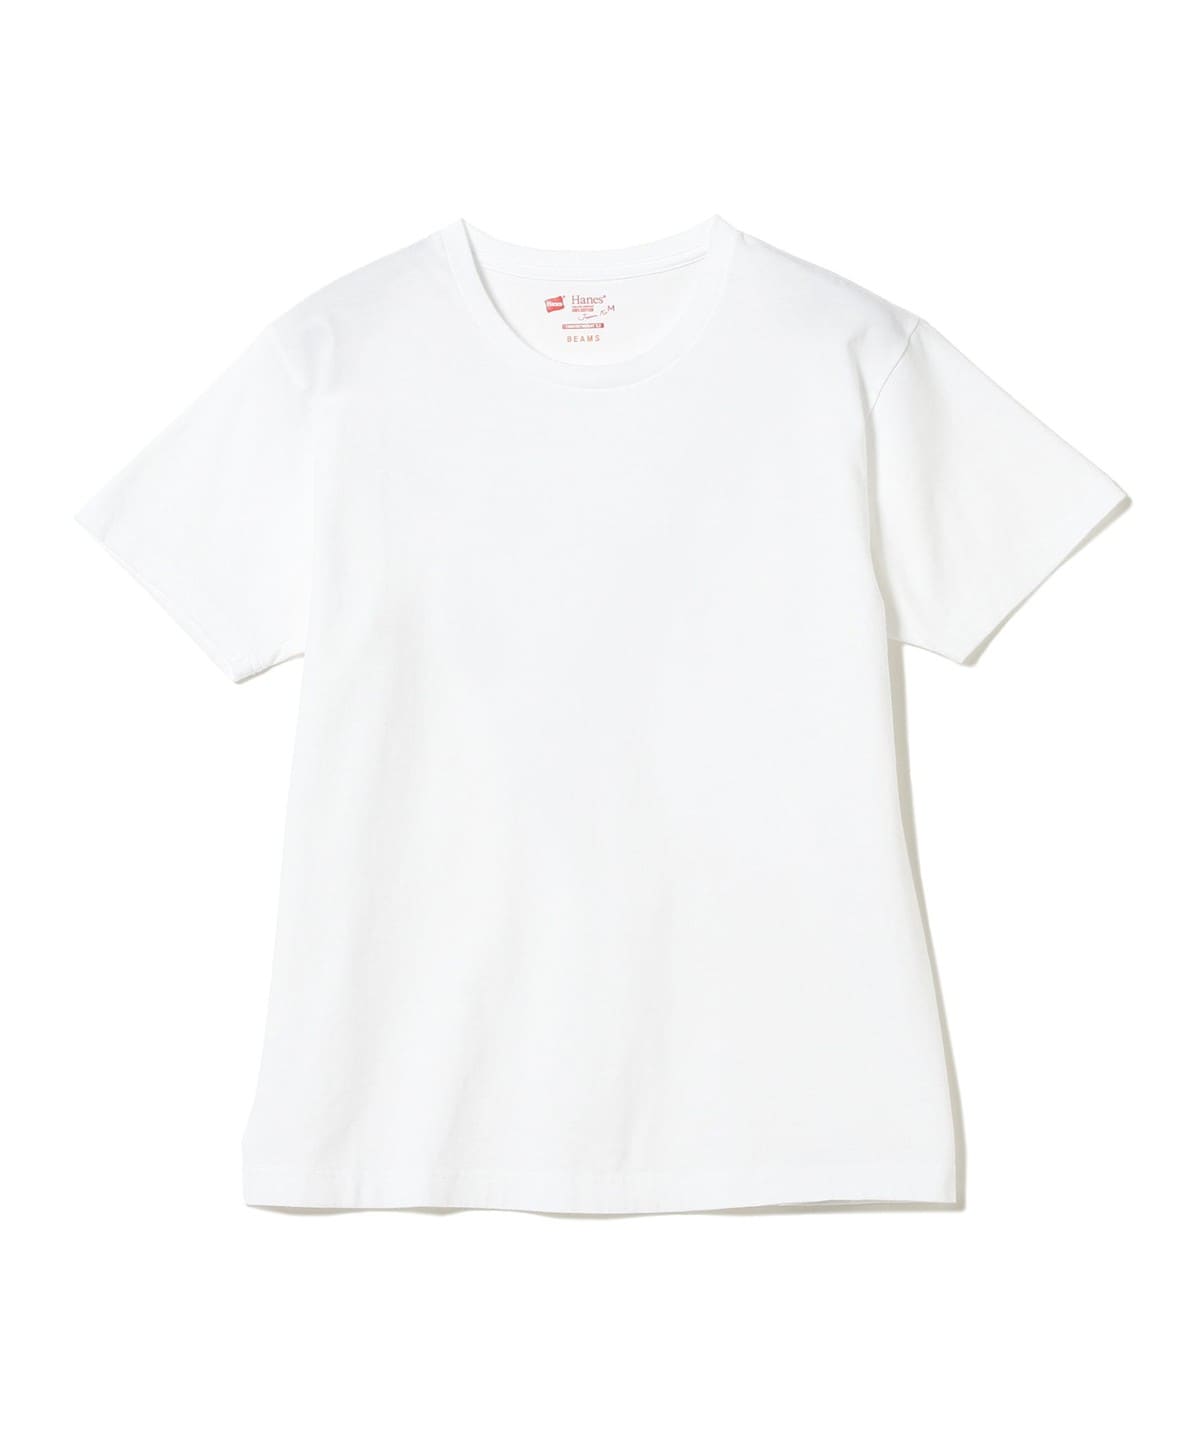 BEAMS Hanes × BEAMS / Special order Japan Fit 2pack T BEAMS shirts 